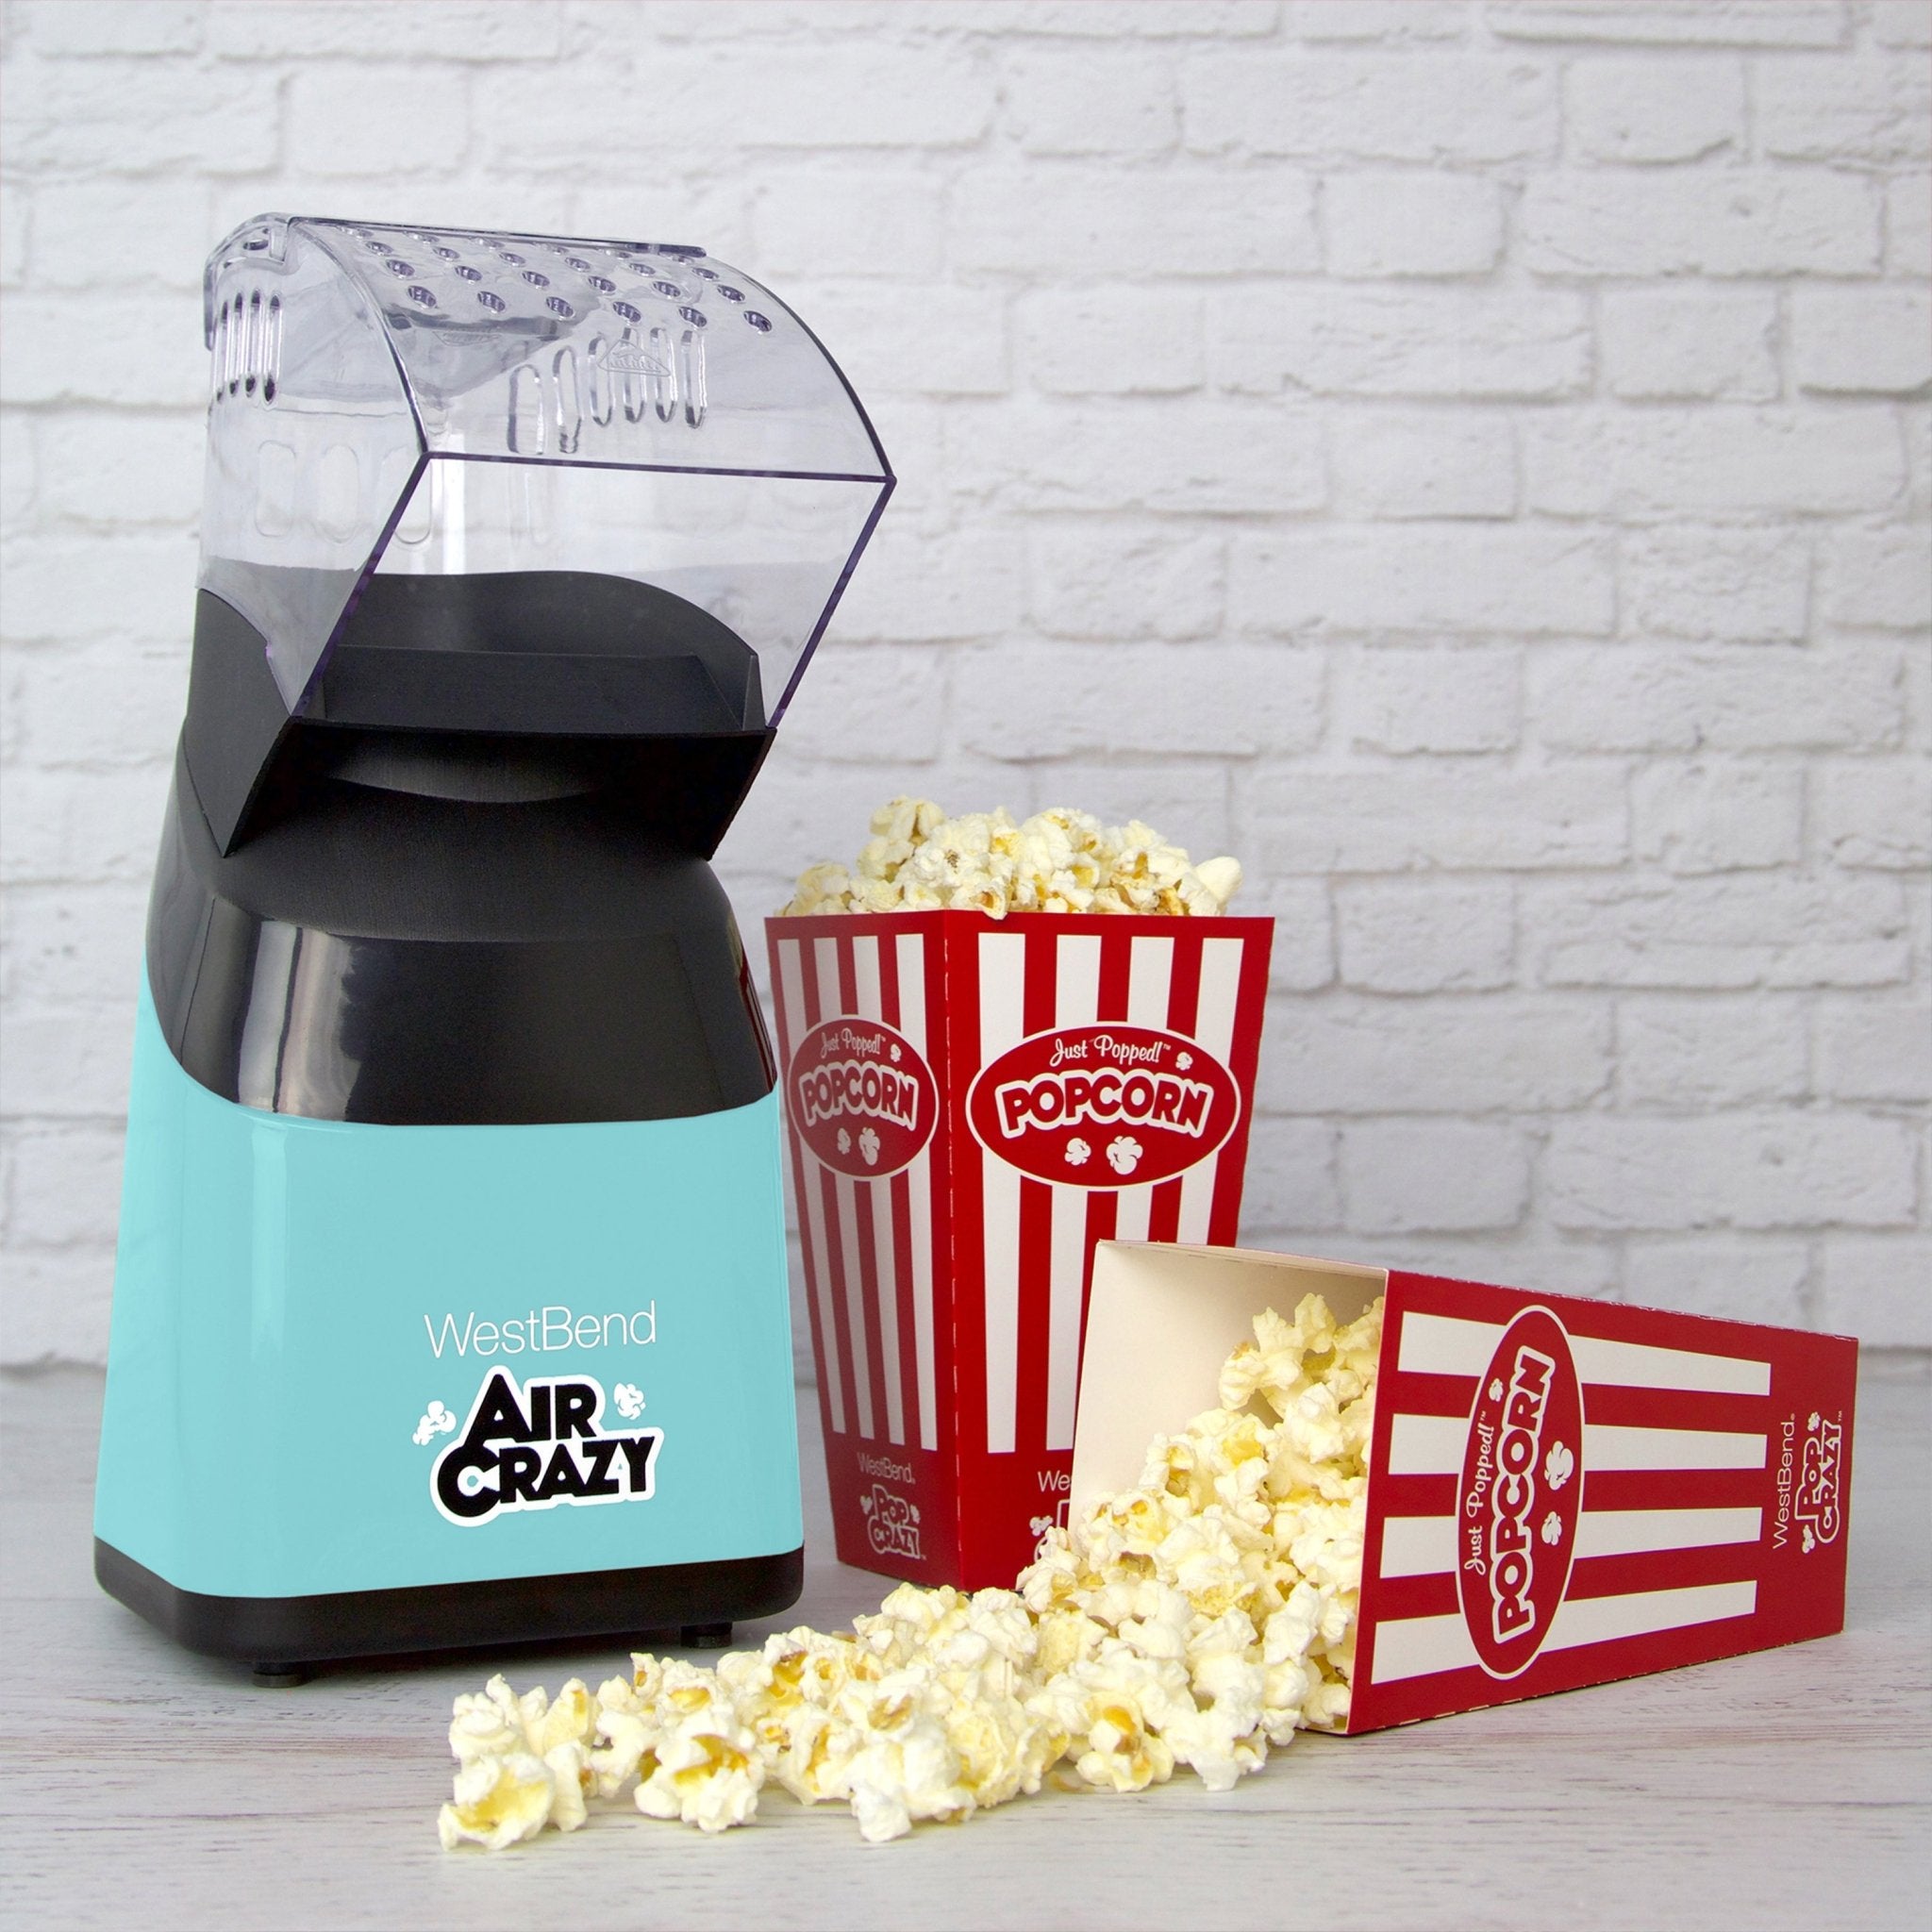 Cheap 6 Quart Popcorn Machine, Stir Crazy Popcorn Popper Machine